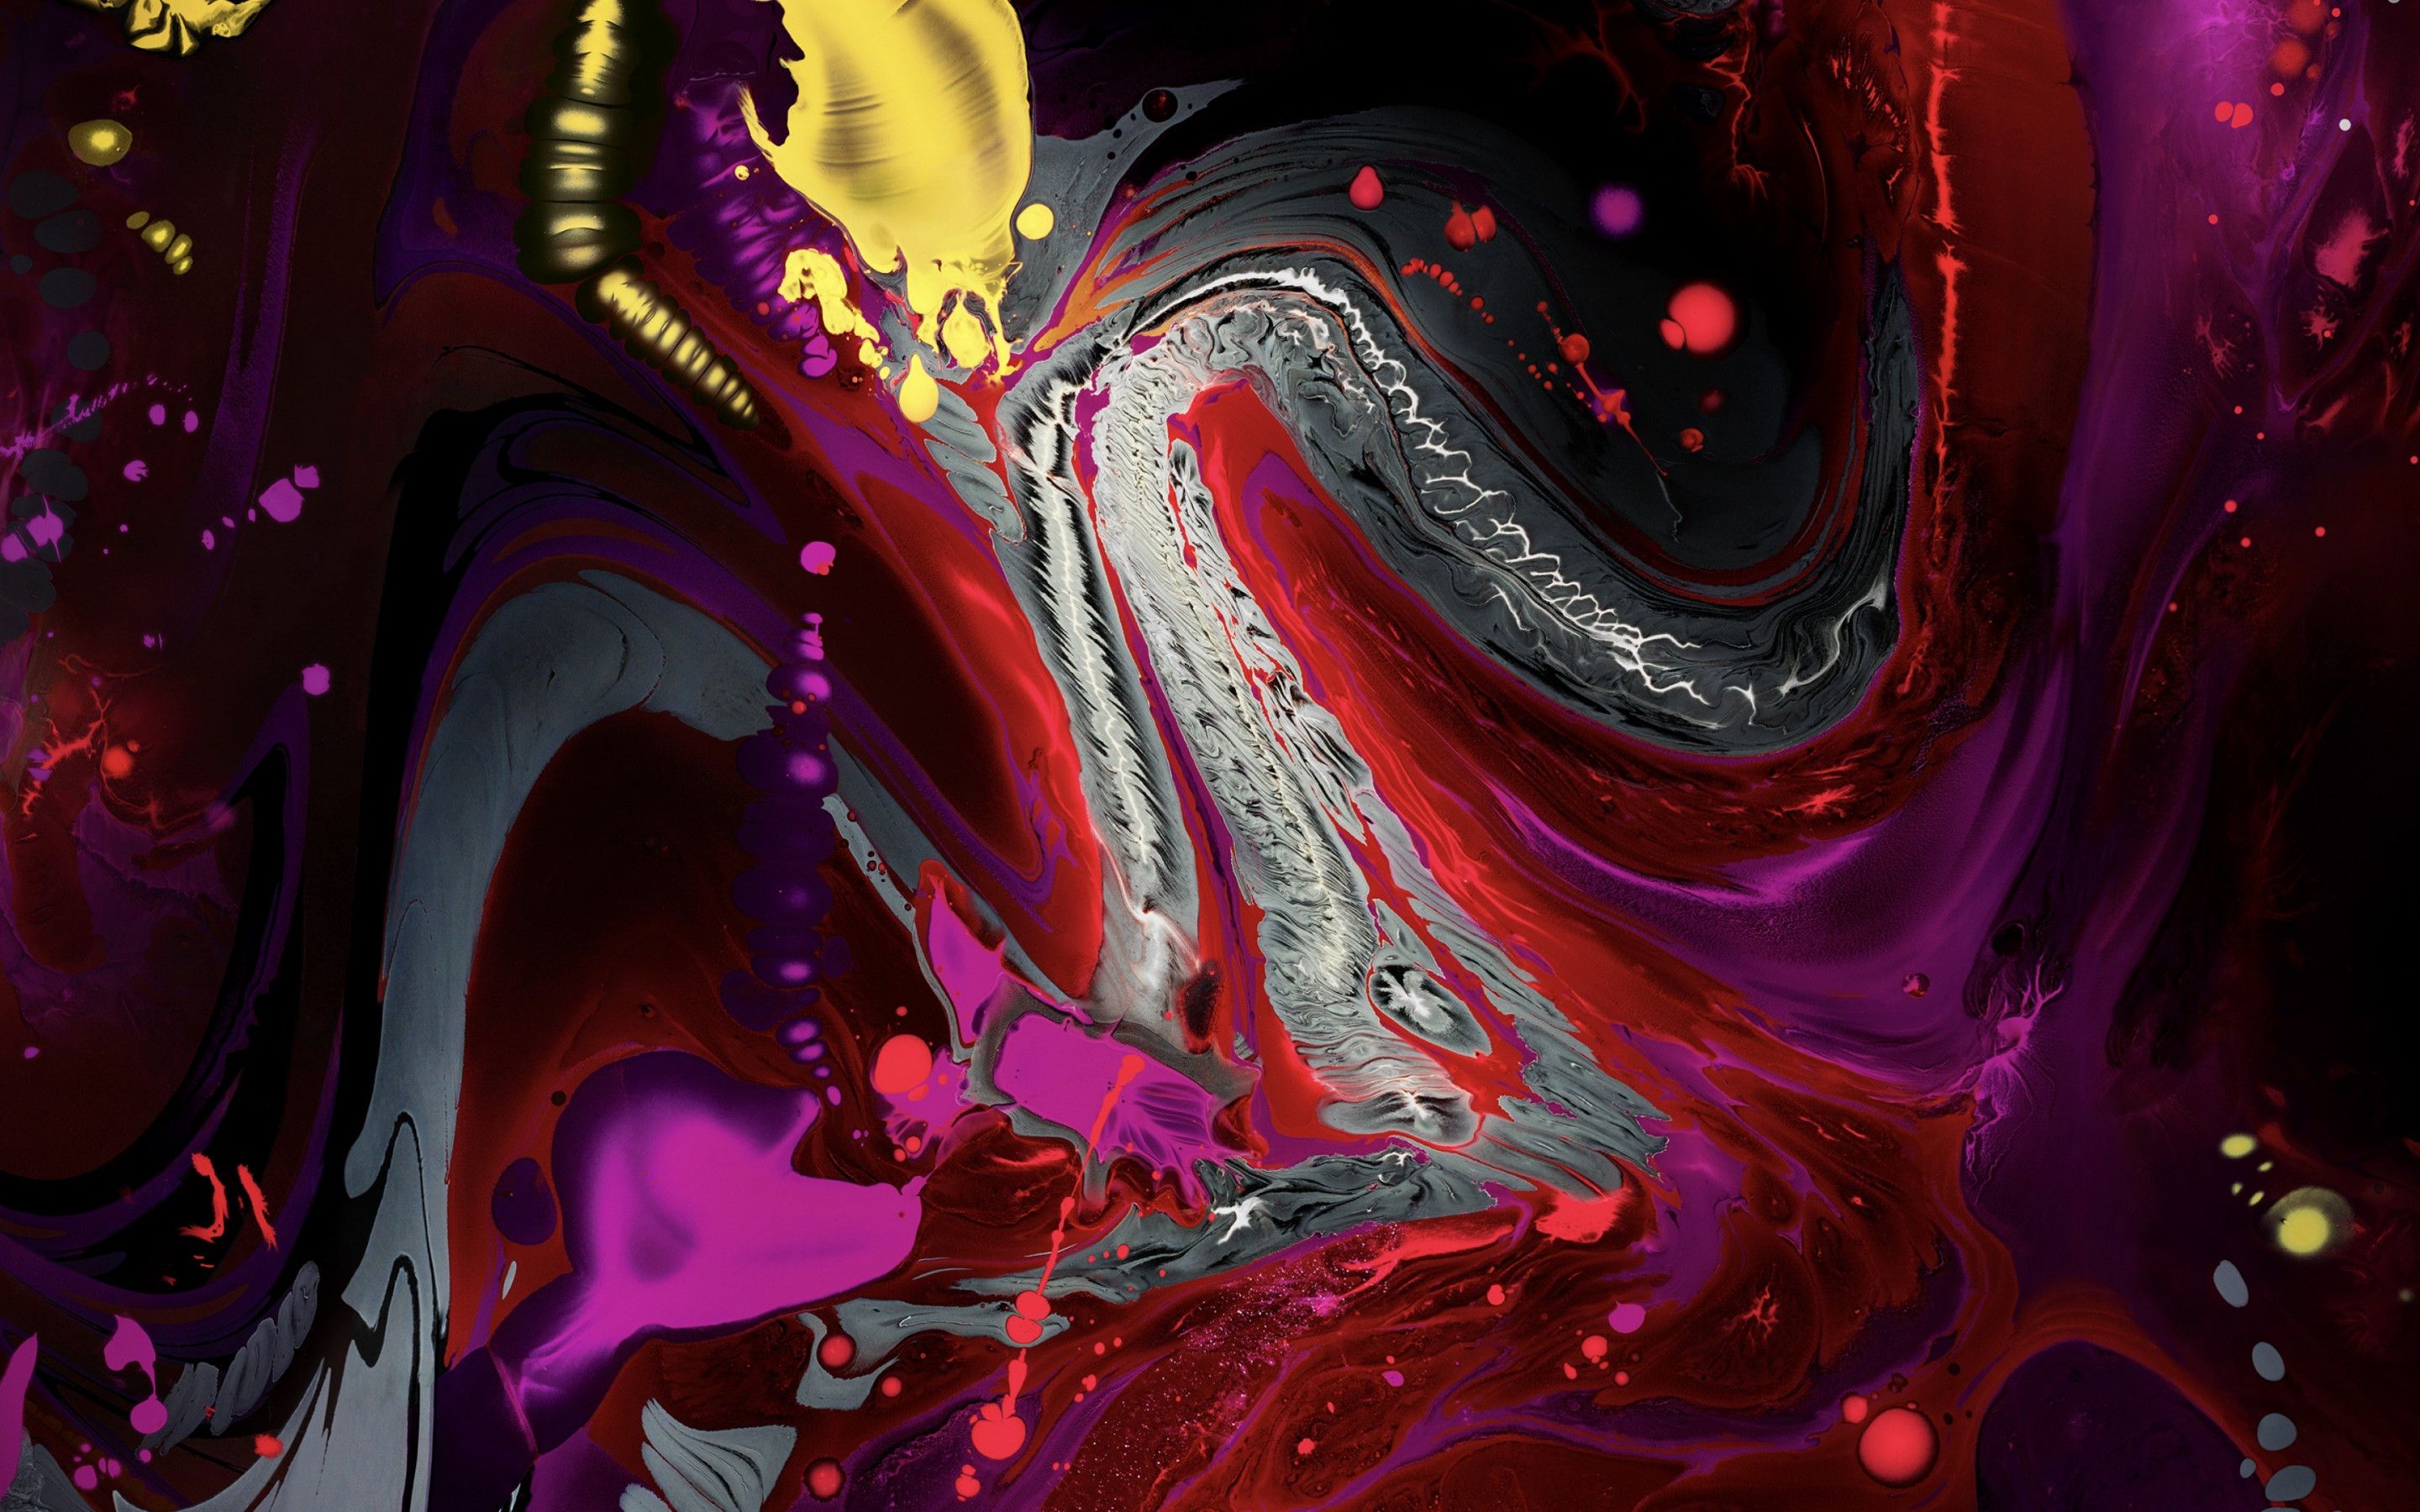 Download wallpaper: Liquid colors from iPad 2018 2880x1800